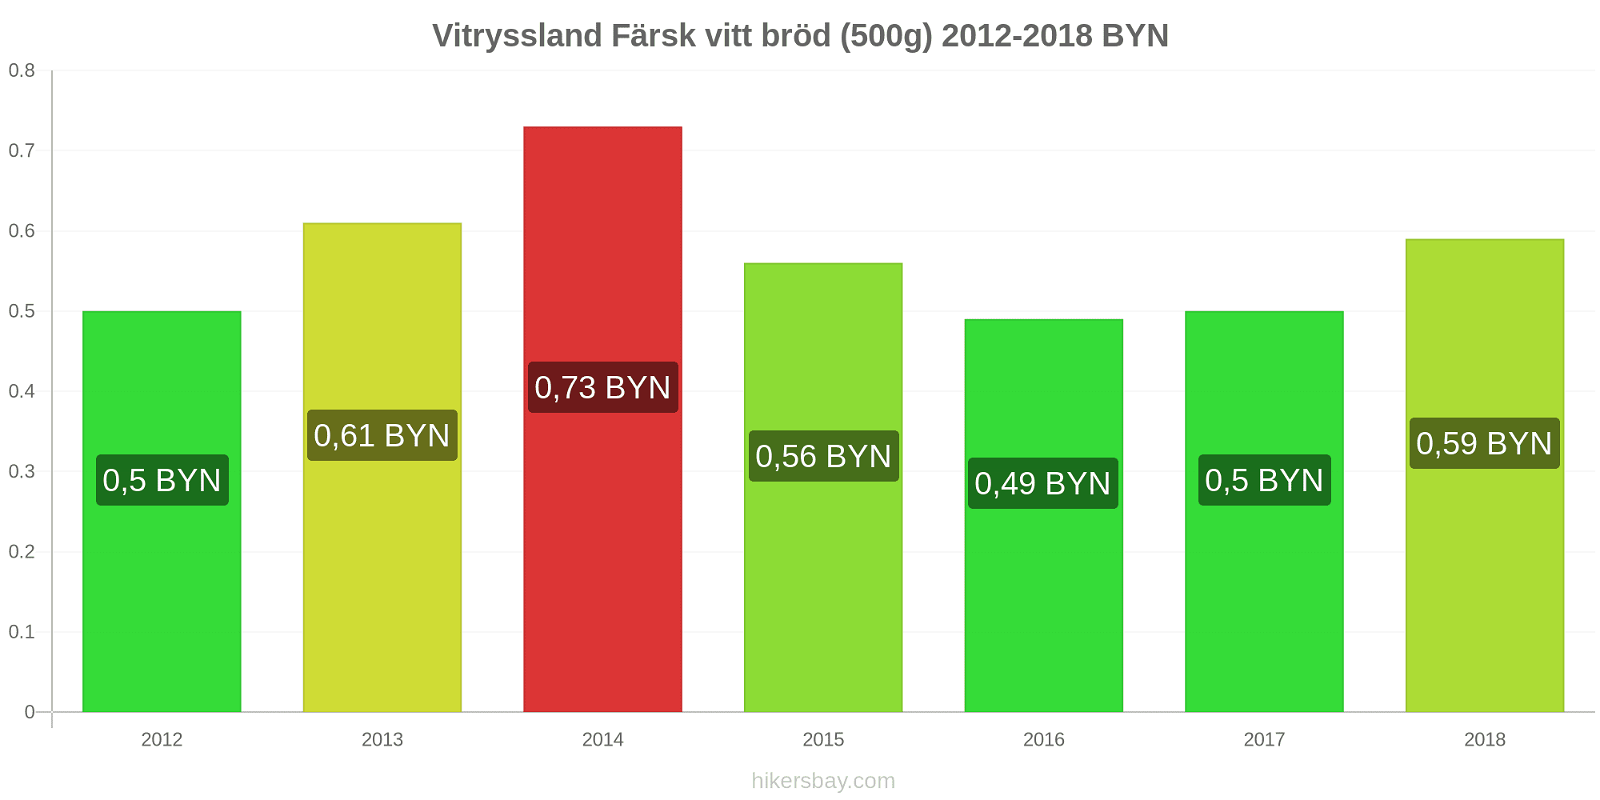 Vitryssland prisändringar Färsk vitt bröd (500g) hikersbay.com